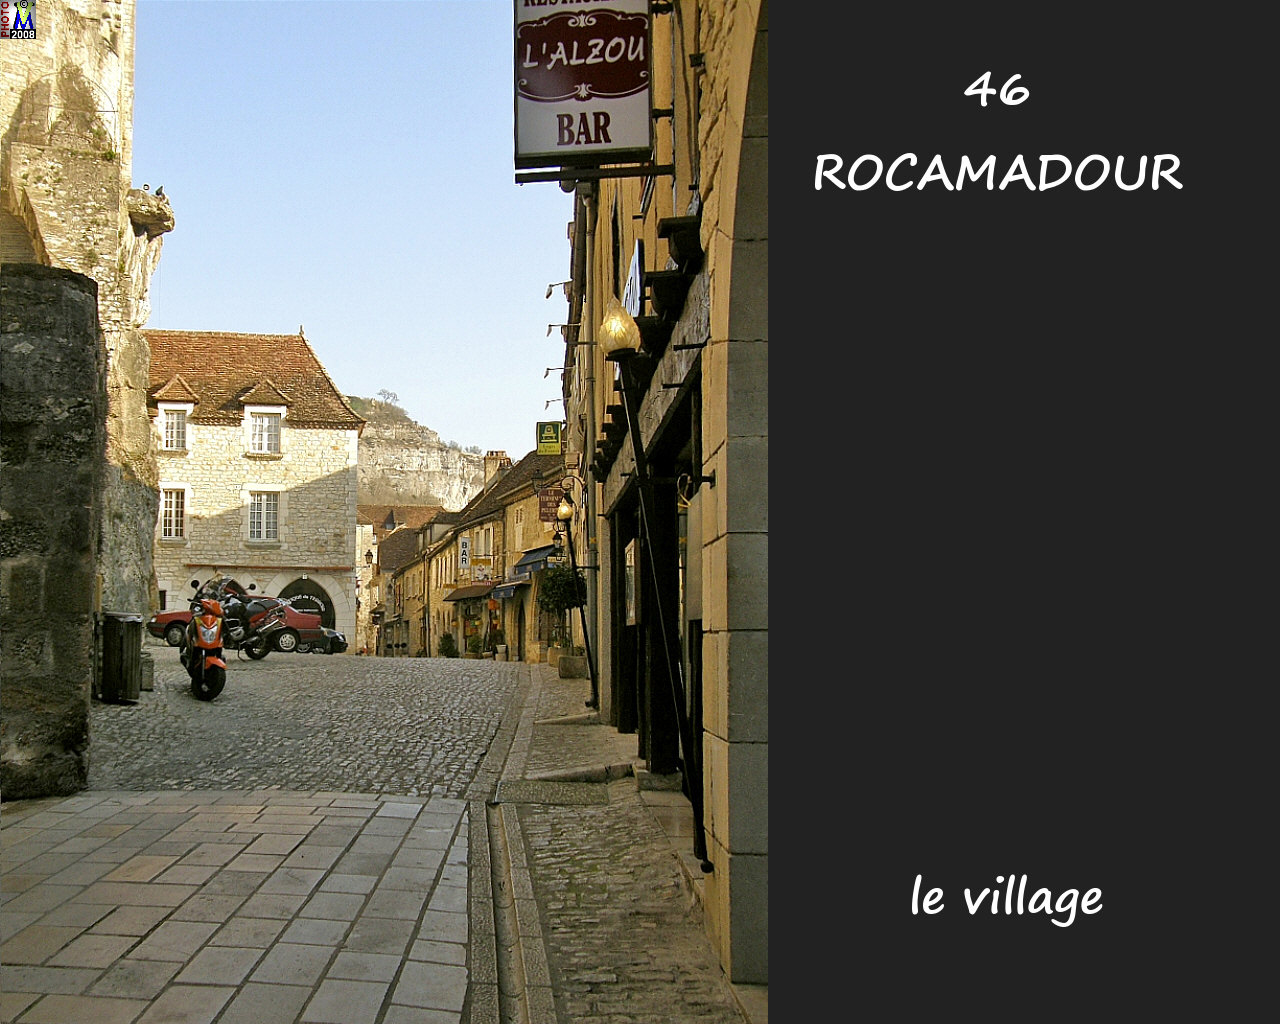 46ROCAMADOUR_village_120.jpg